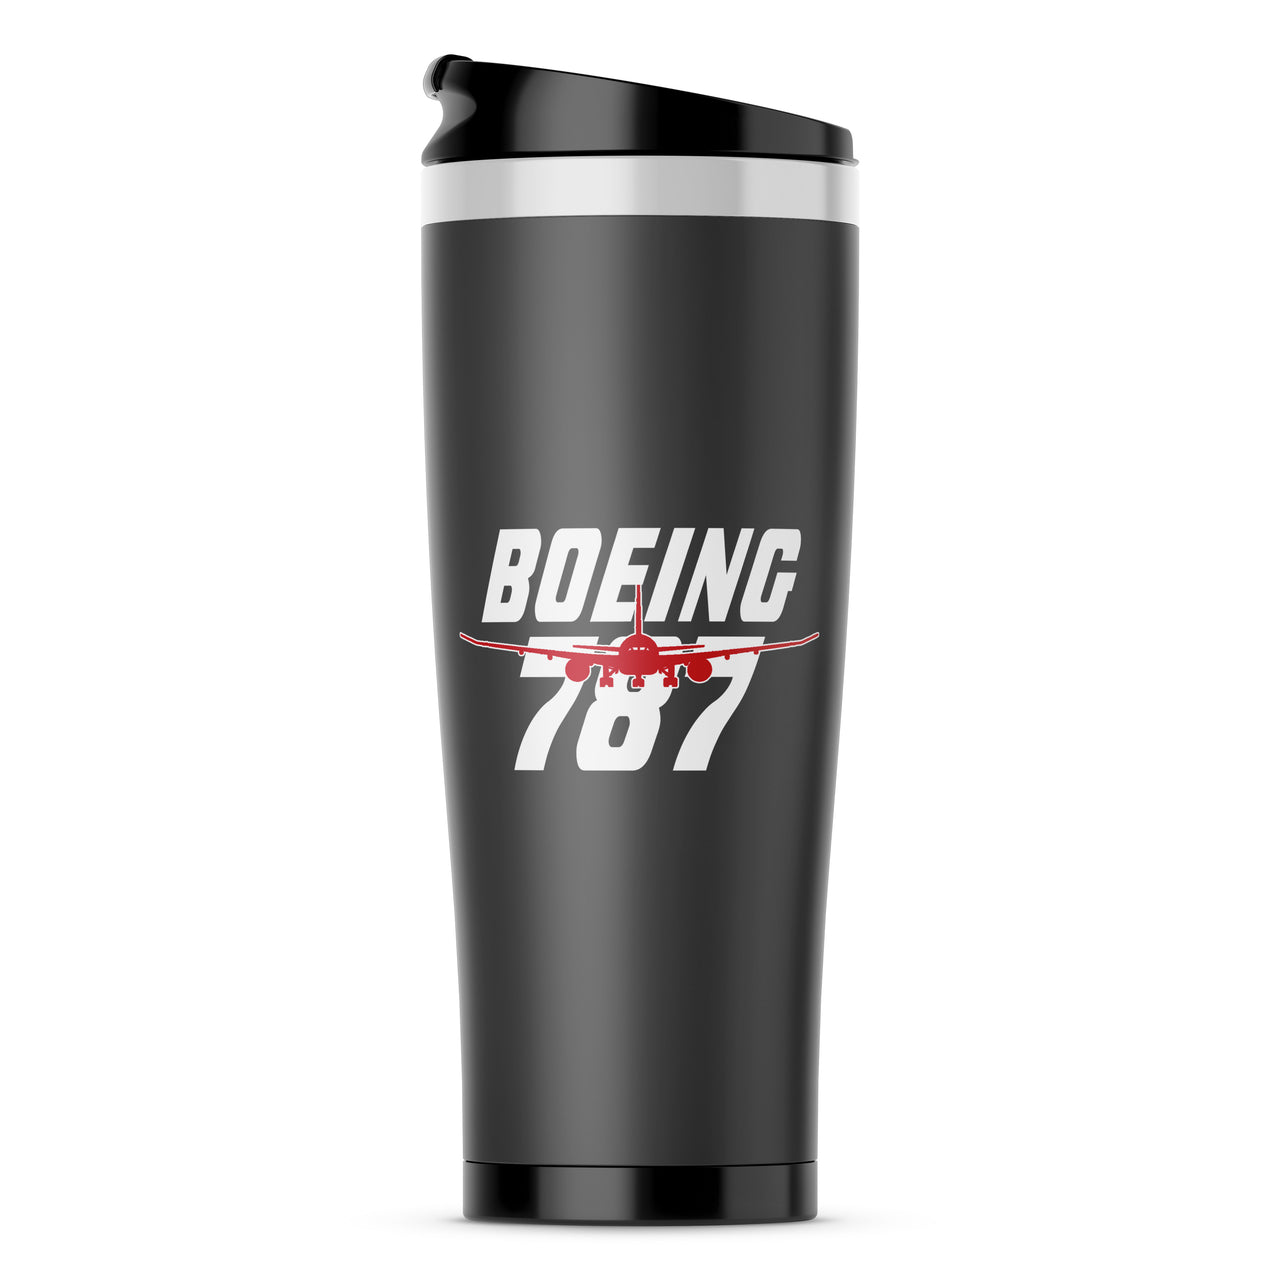 Amazing Boeing 787 Designed Travel Mugs